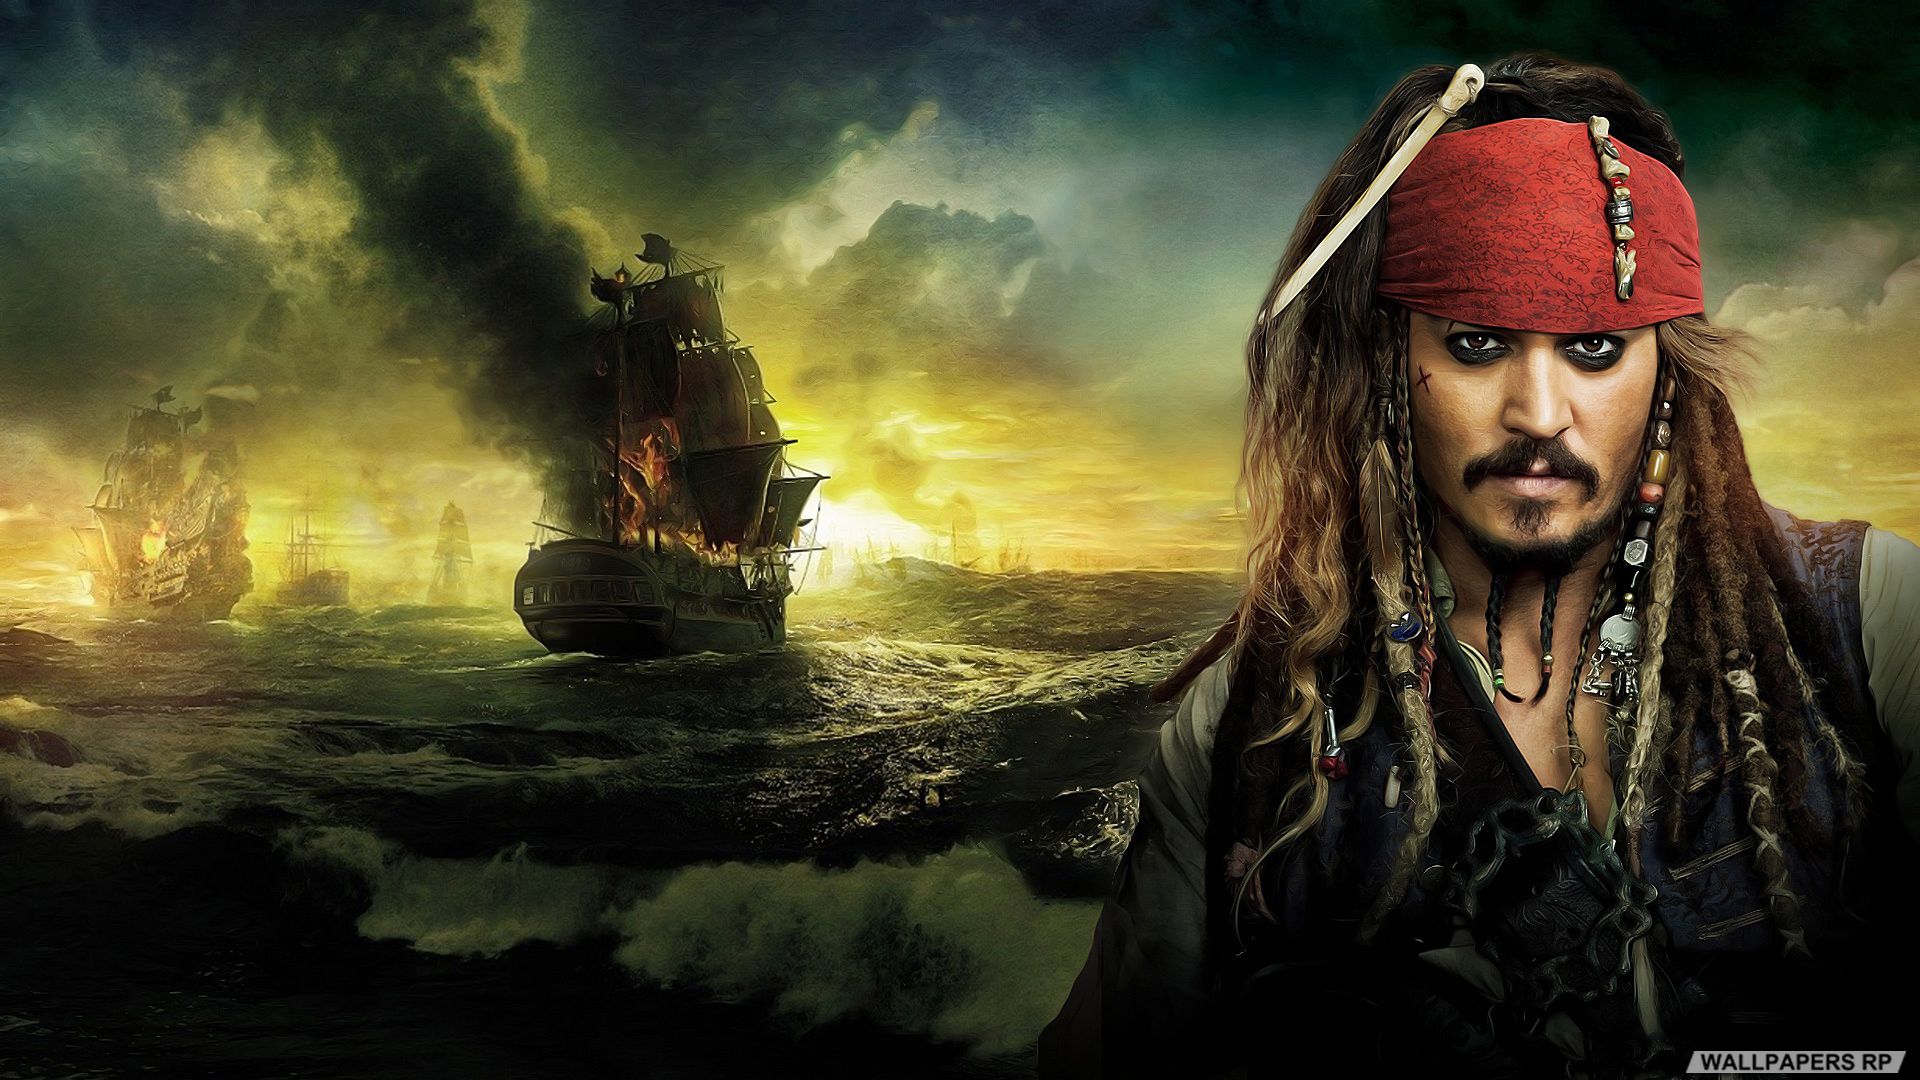 Venda antecipada para Piratas do Caribe já começou